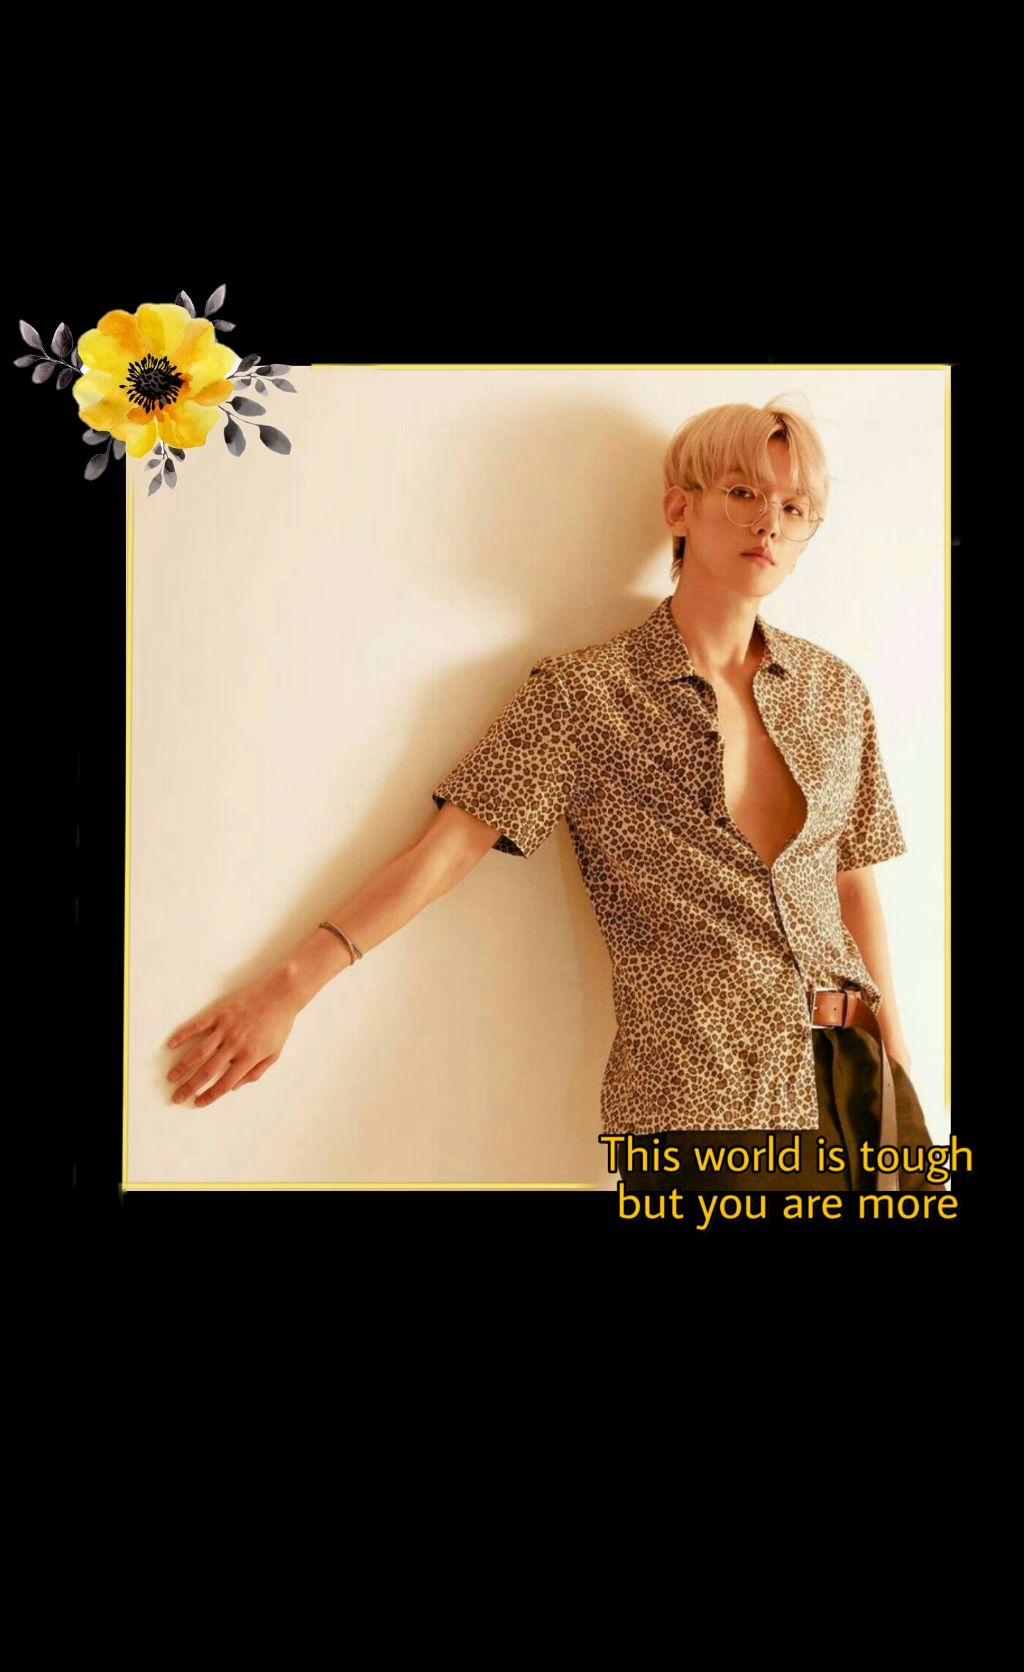 #freetoedit #kpop #exo #baekhyun #wallpaper #wallpaperkpop - Sunflower , HD Wallpaper & Backgrounds